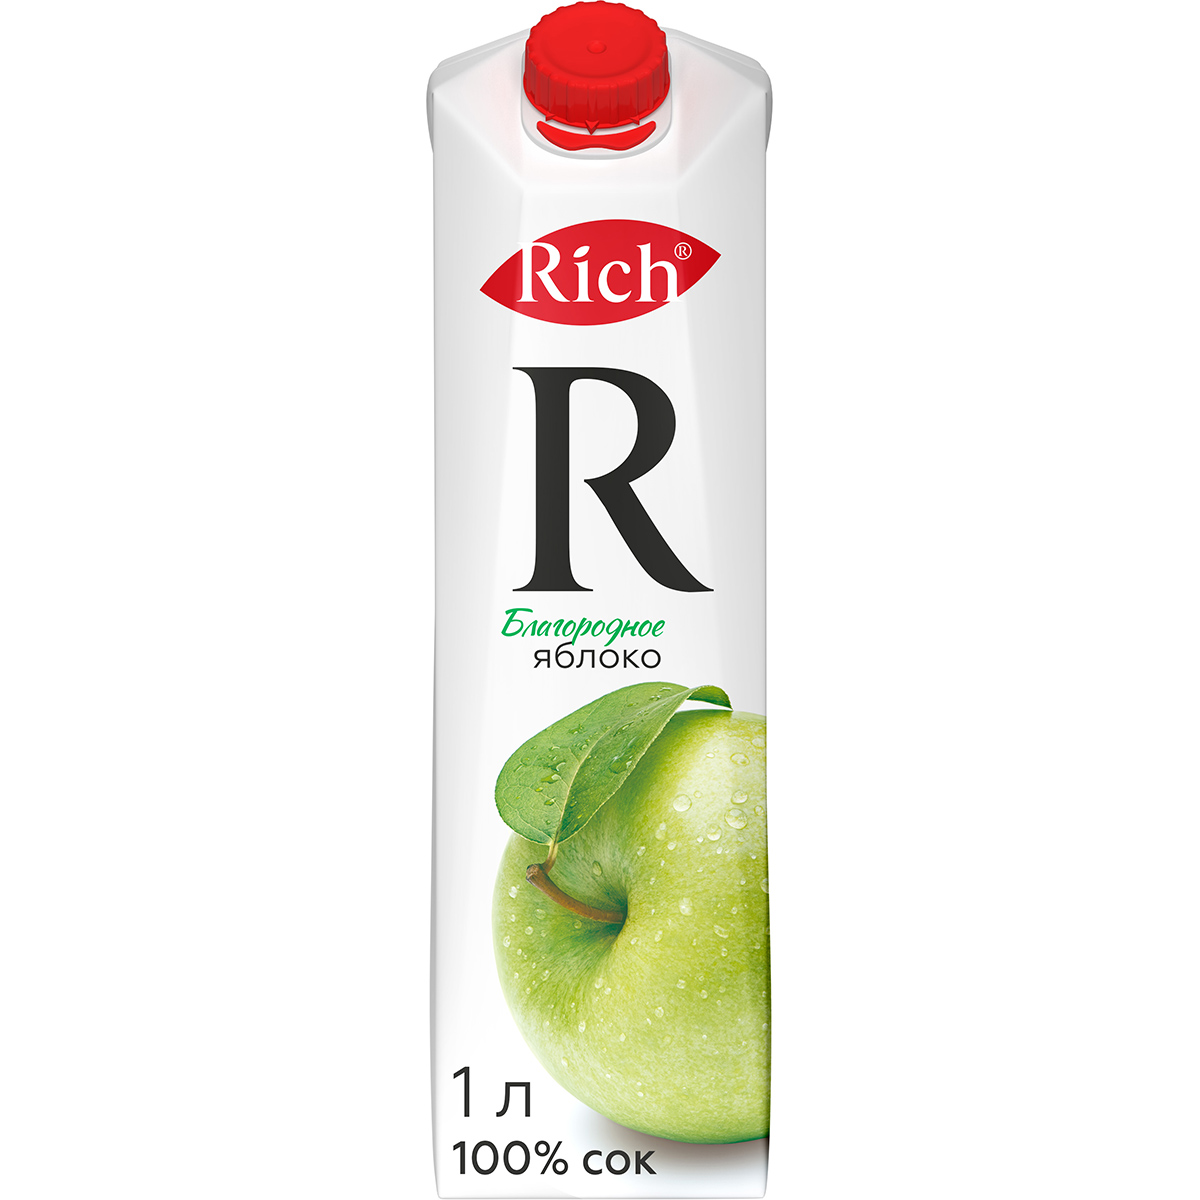 Сок Rich яблочный осветленный 100% 1 л сок rich яблочный осветленный 100% 1 л